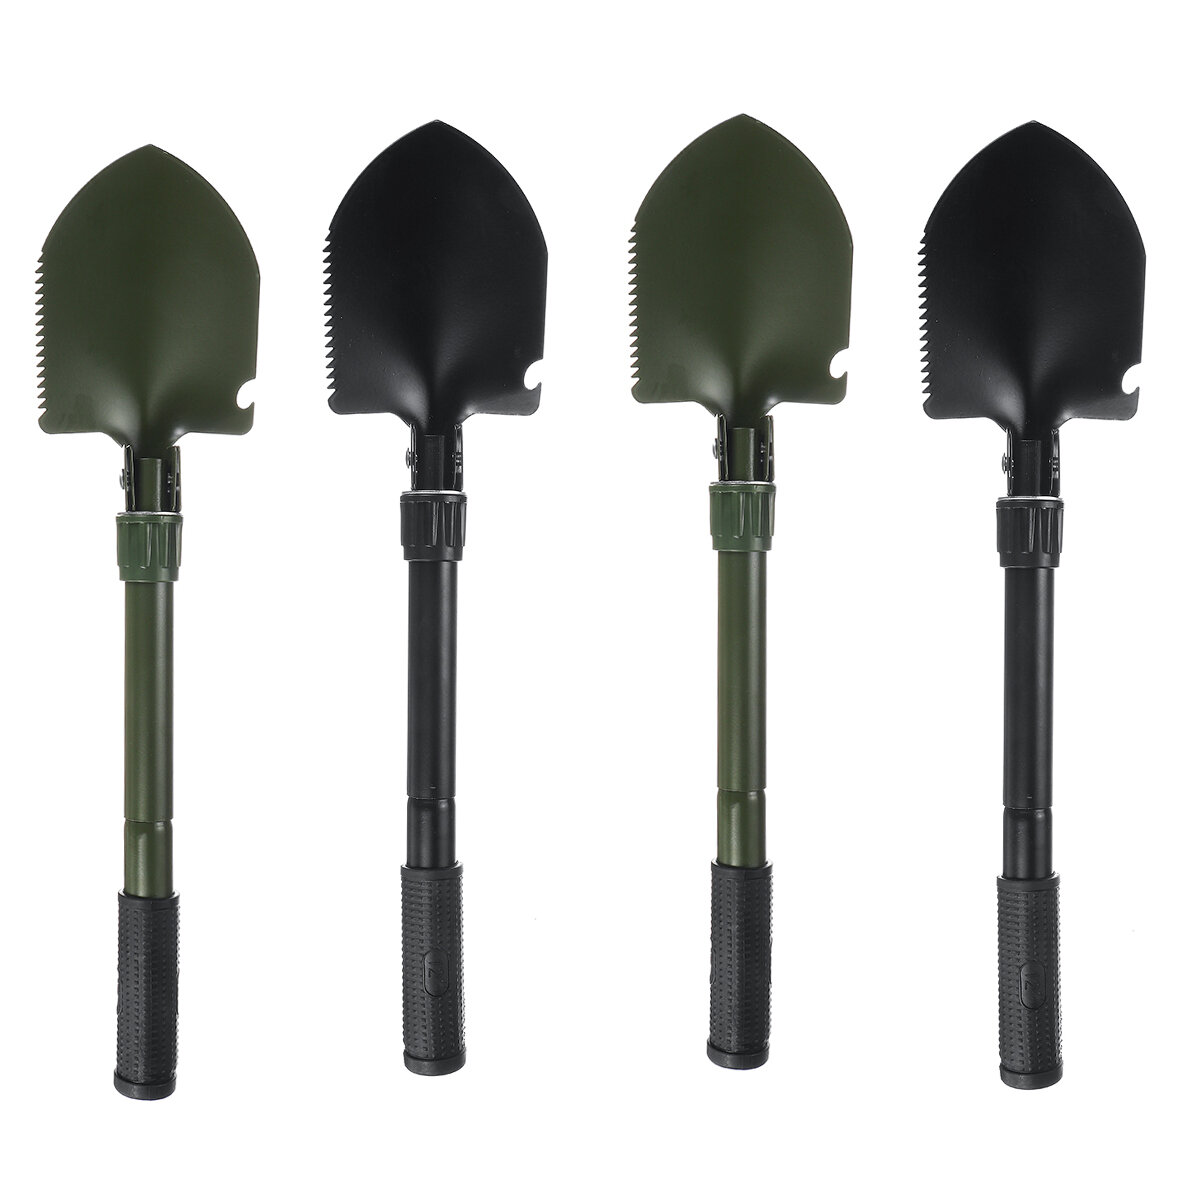 Pelle multifonctionnelle outils de jardin pliants de survie en plein air pelle militaire de camping outils de défense et de sécurité